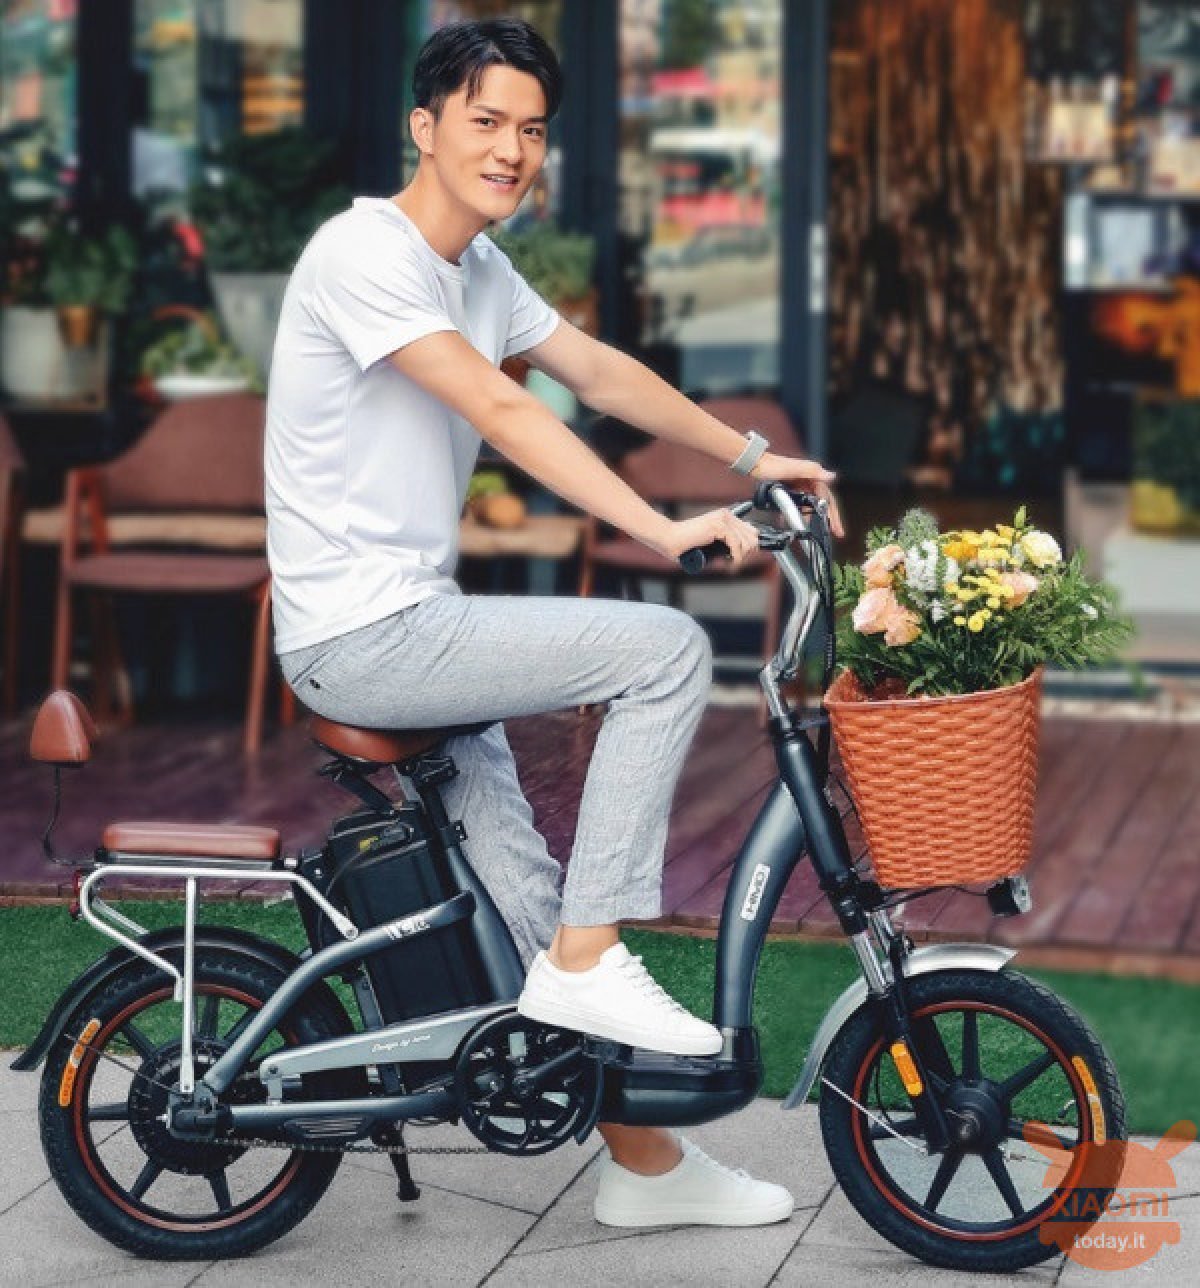 Электровелосипед купить 16. Электровелосипед Himo c16. Xiaomi Himo 16. Himo Electric Bicycle c30s. Электровелосипед Химо з 16.